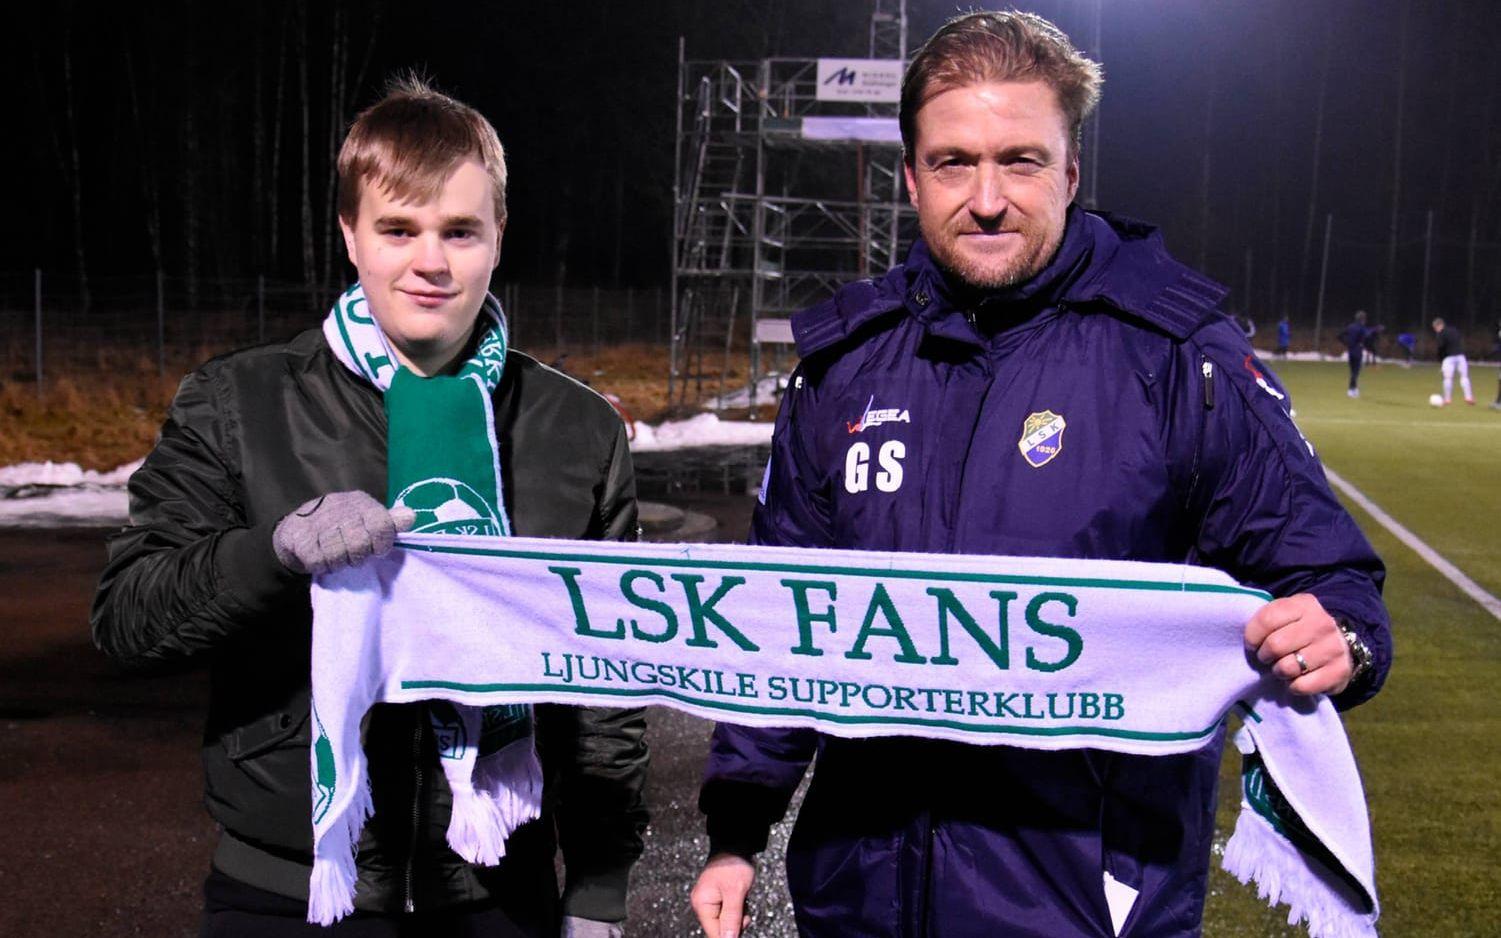 Välkommen. Glenn Ståhl hälsades välkommen till Ljungskile av Elias Olsson i LSK Fans.